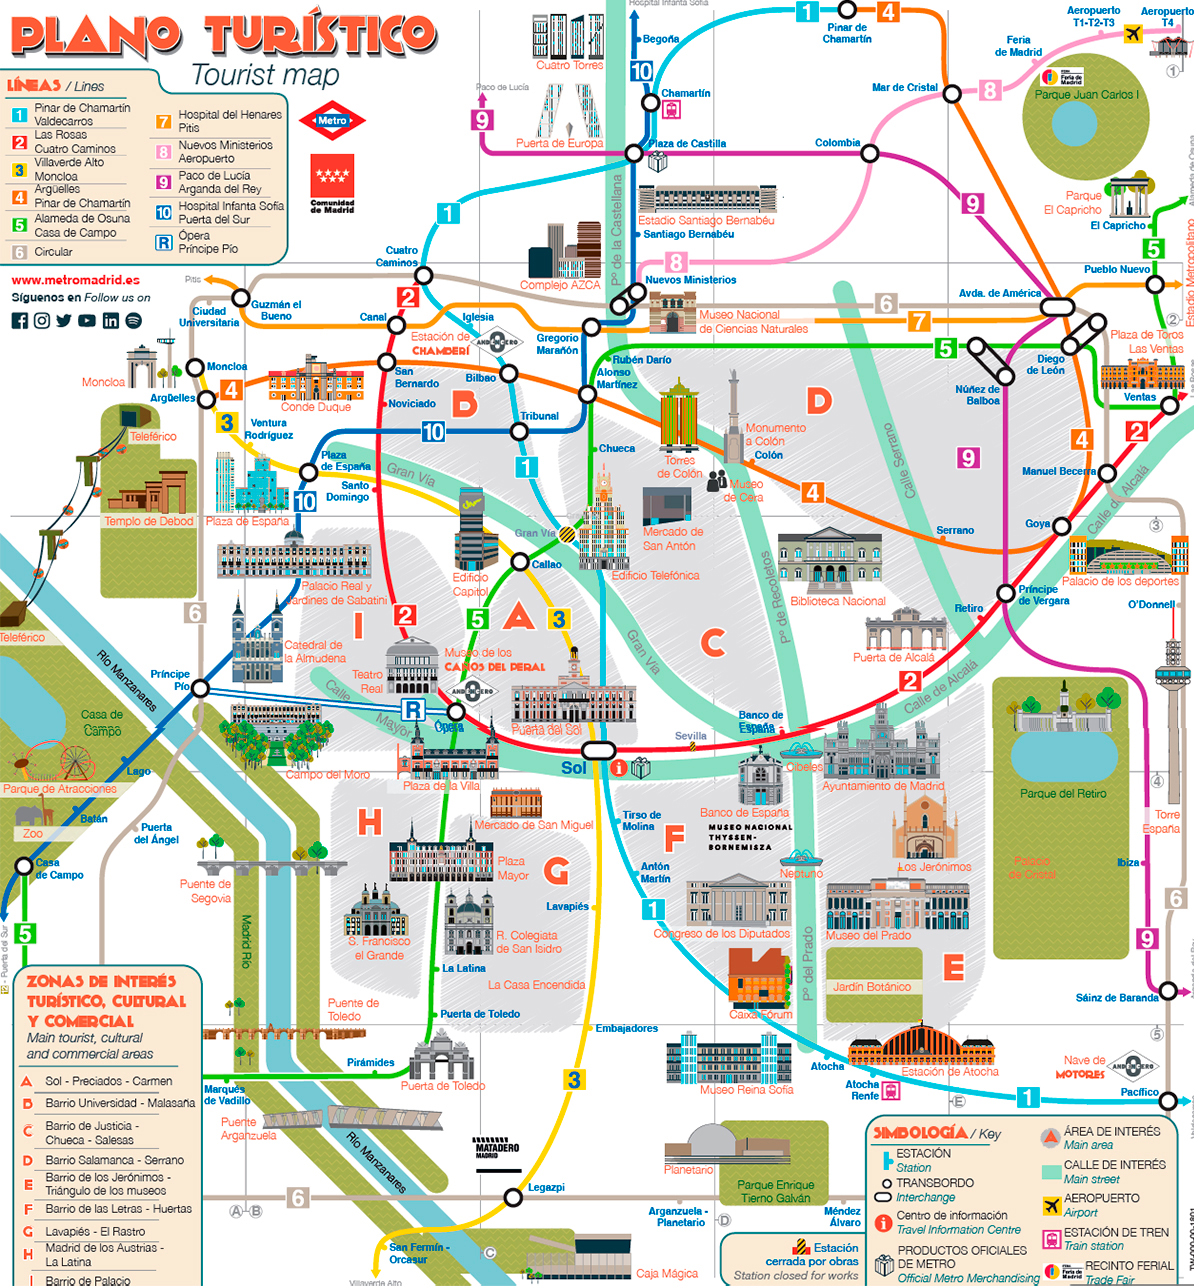 Plano turístico del metro de Madrid.